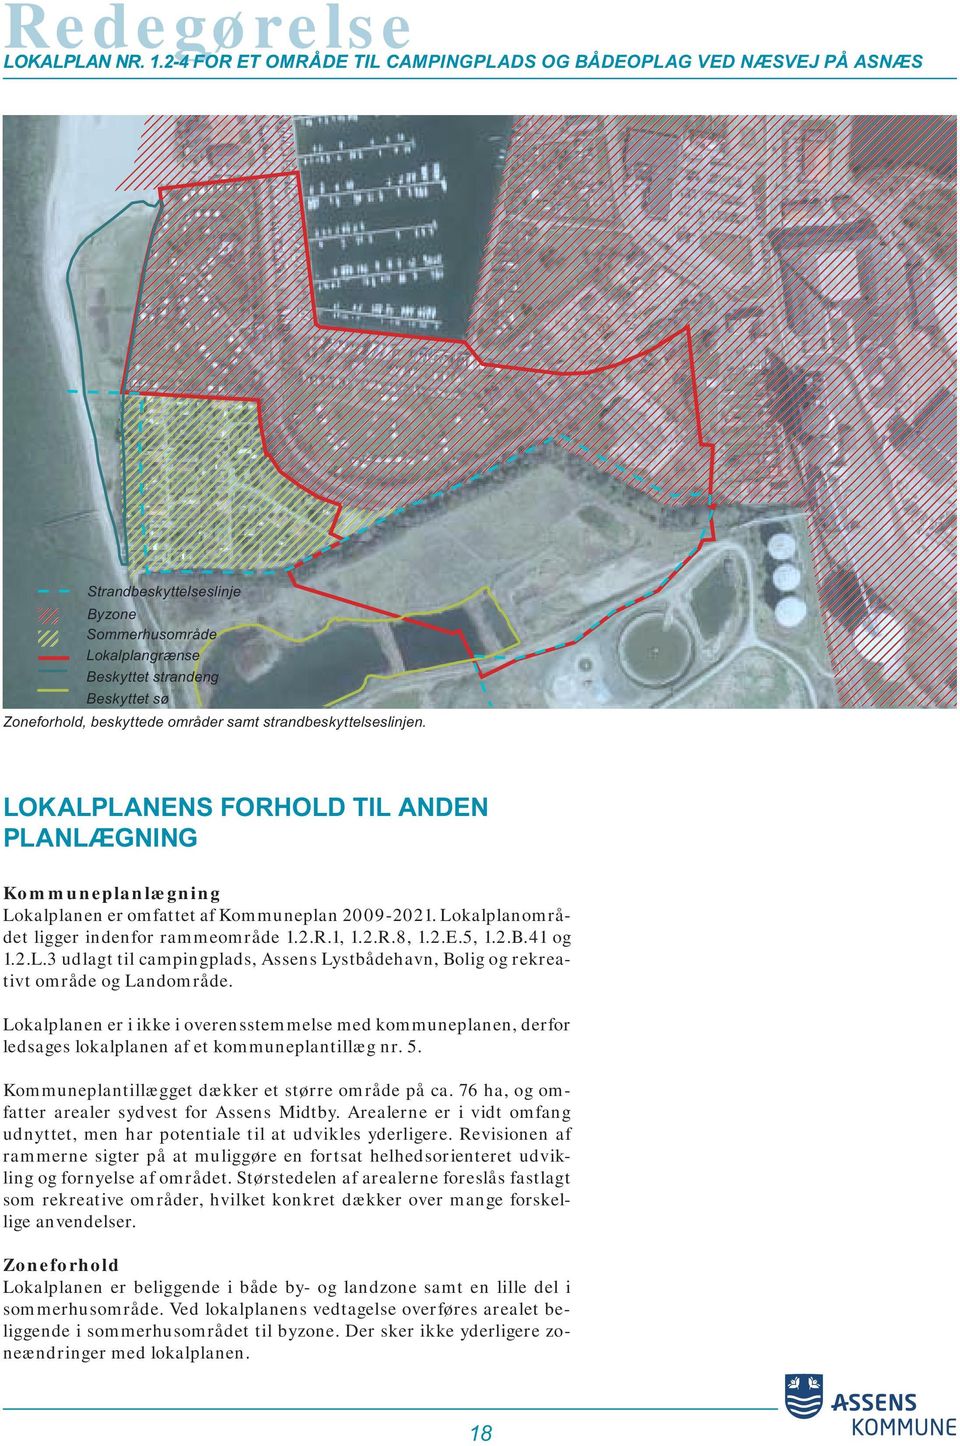 LOKALPLANENS FORHOLD TIL ANDEN PLANLÆGNING Kommuneplanlægning Lokalplanen er omfattet af Kommuneplan 2009-2021. Lokalplanområdet ligger indenfor rammeområde 1.2.R.1, 1.2.R.8, 1.2.E.5, 1.2.B.41 og 1.2.L.3 udlagt til campingplads, Assens Lystbådehavn, Bolig og rekreativt område og Landområde.